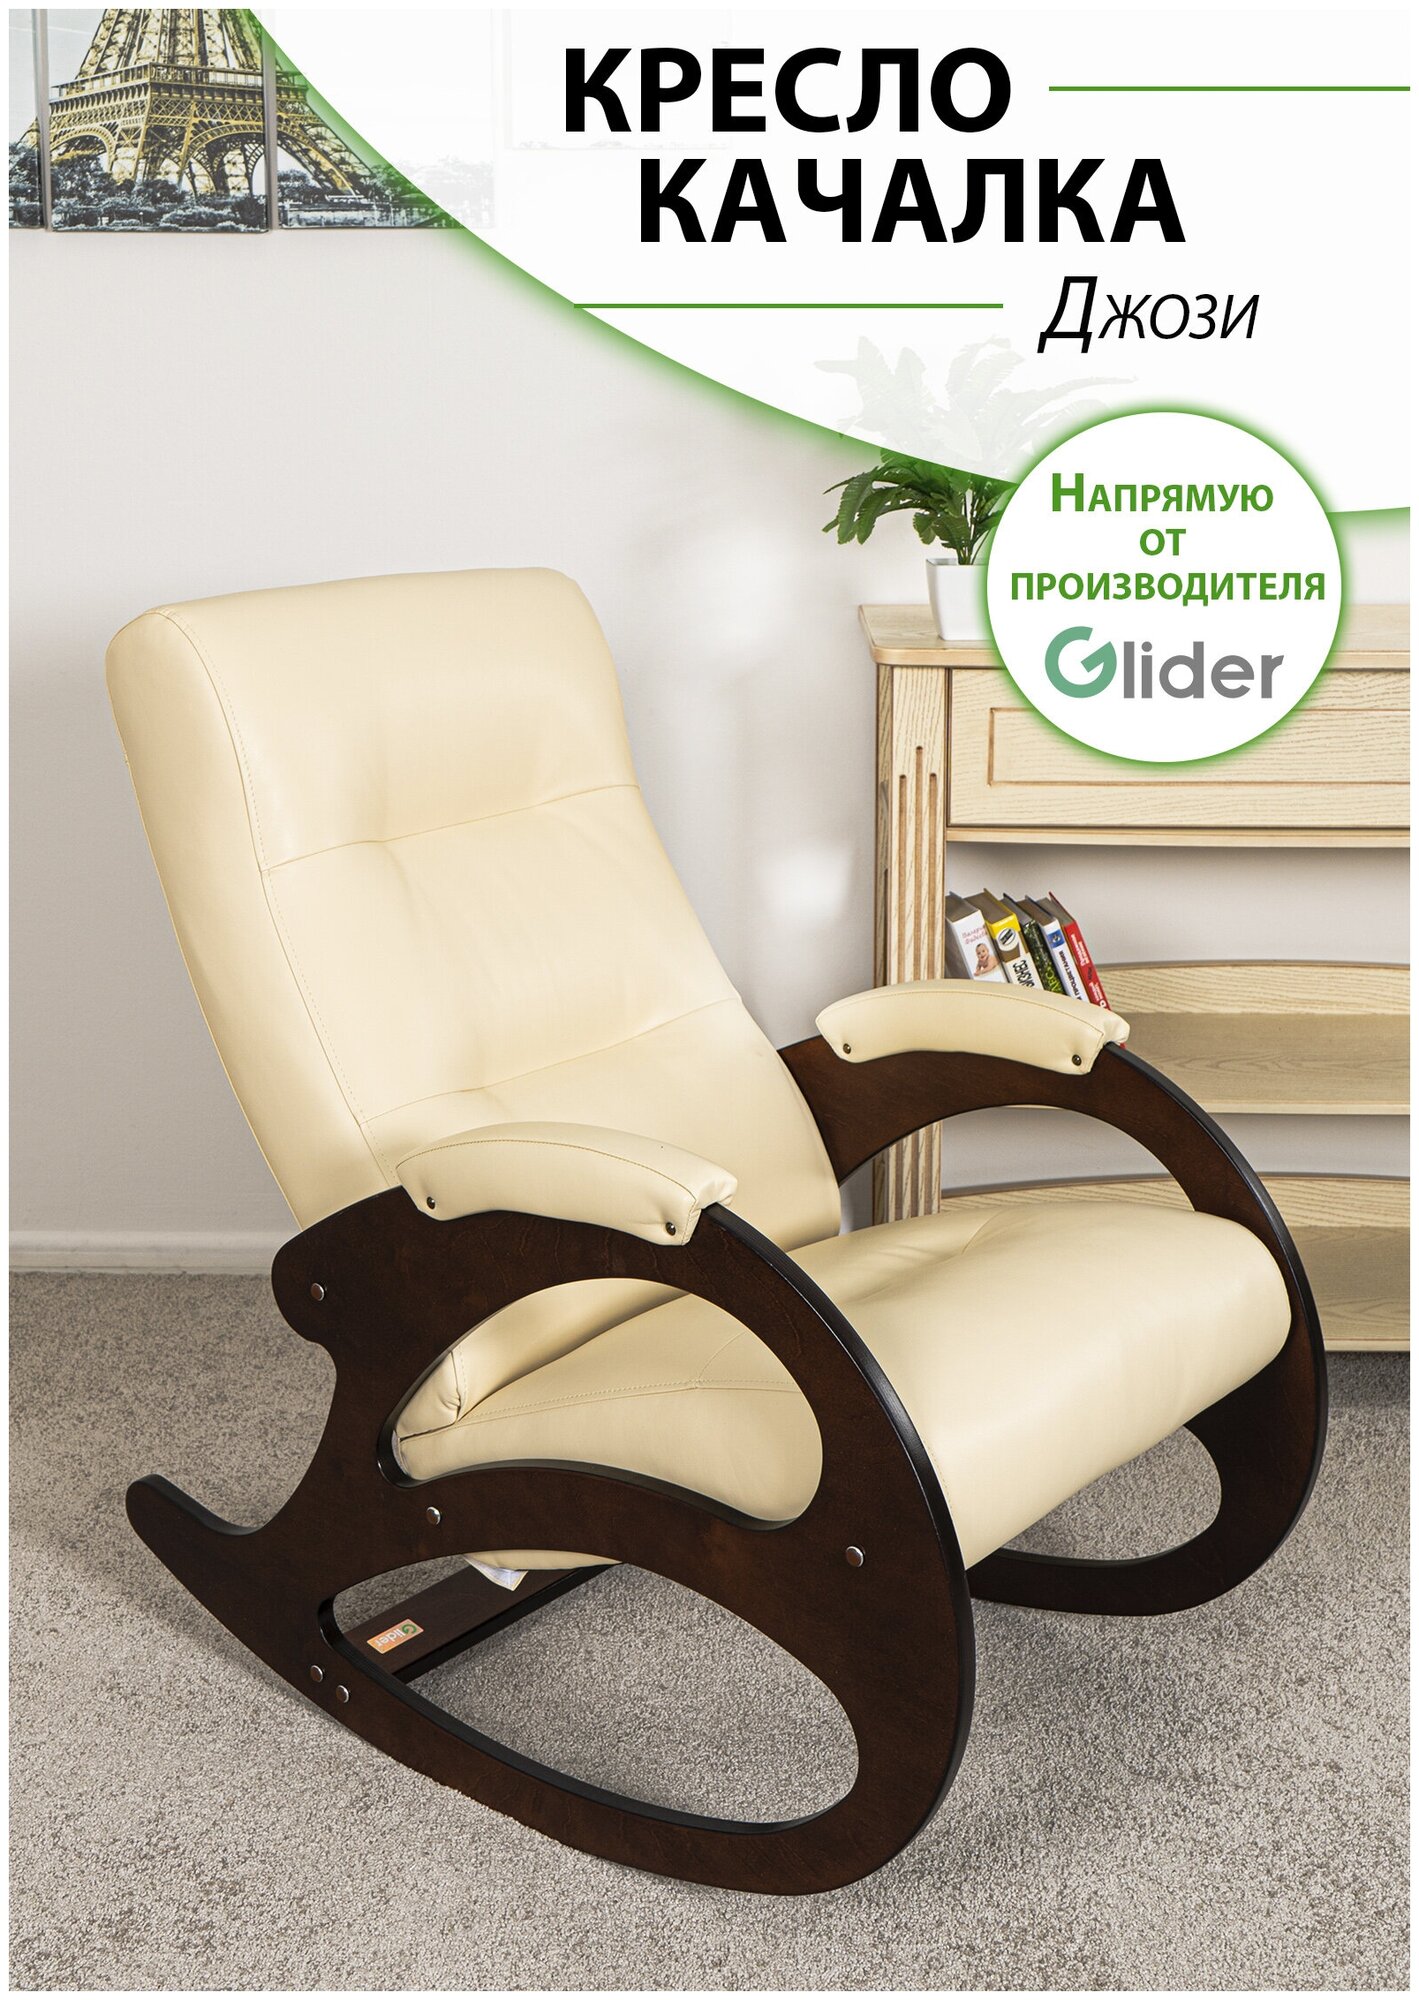 Кресло-качалка для дома и дачи Glider Джози в эко-коже, цвет бежевый